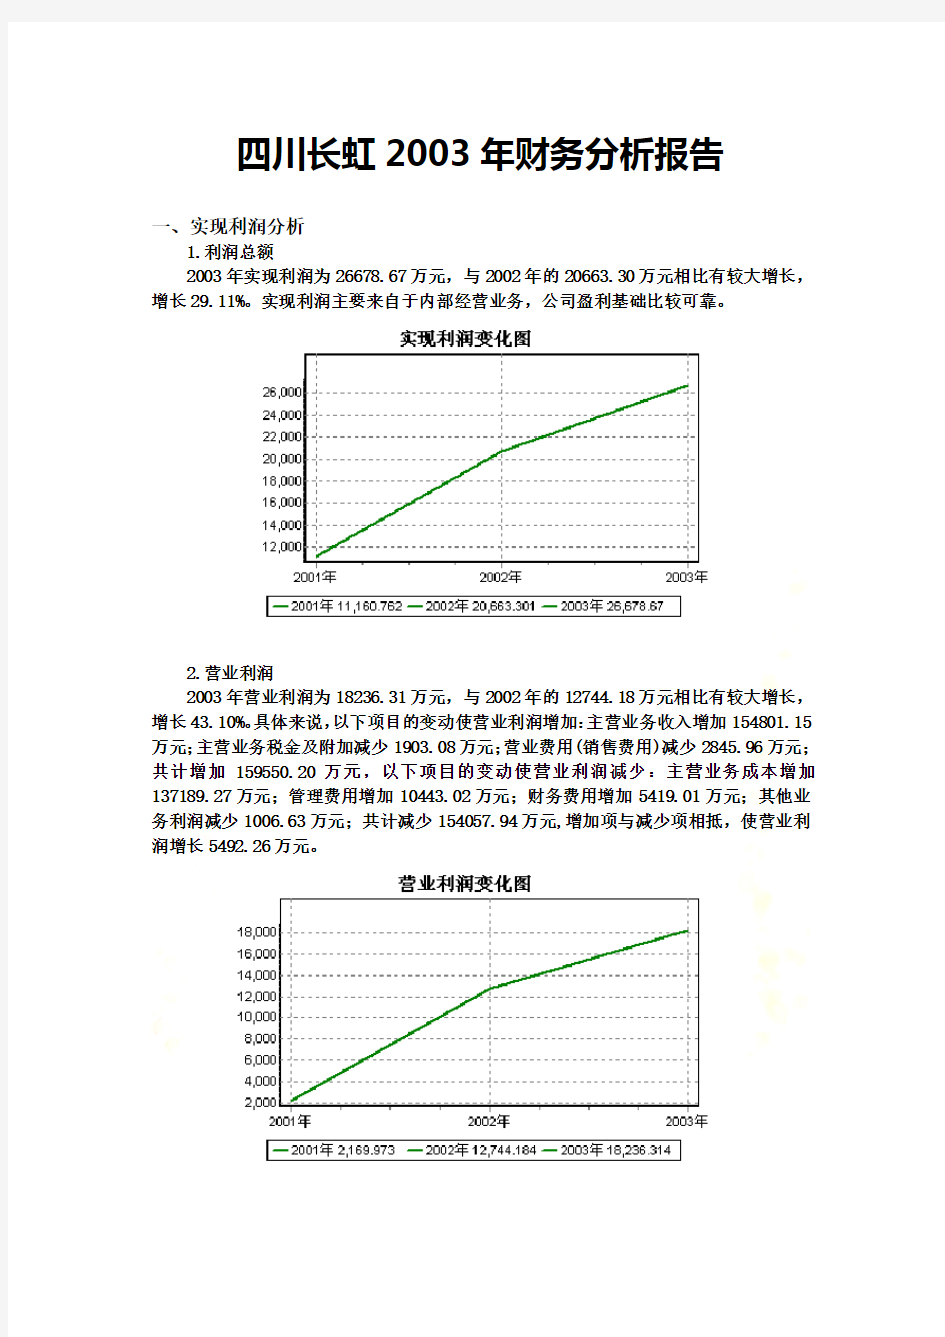 四川长虹公司年度财务分析报告(doc 30页)